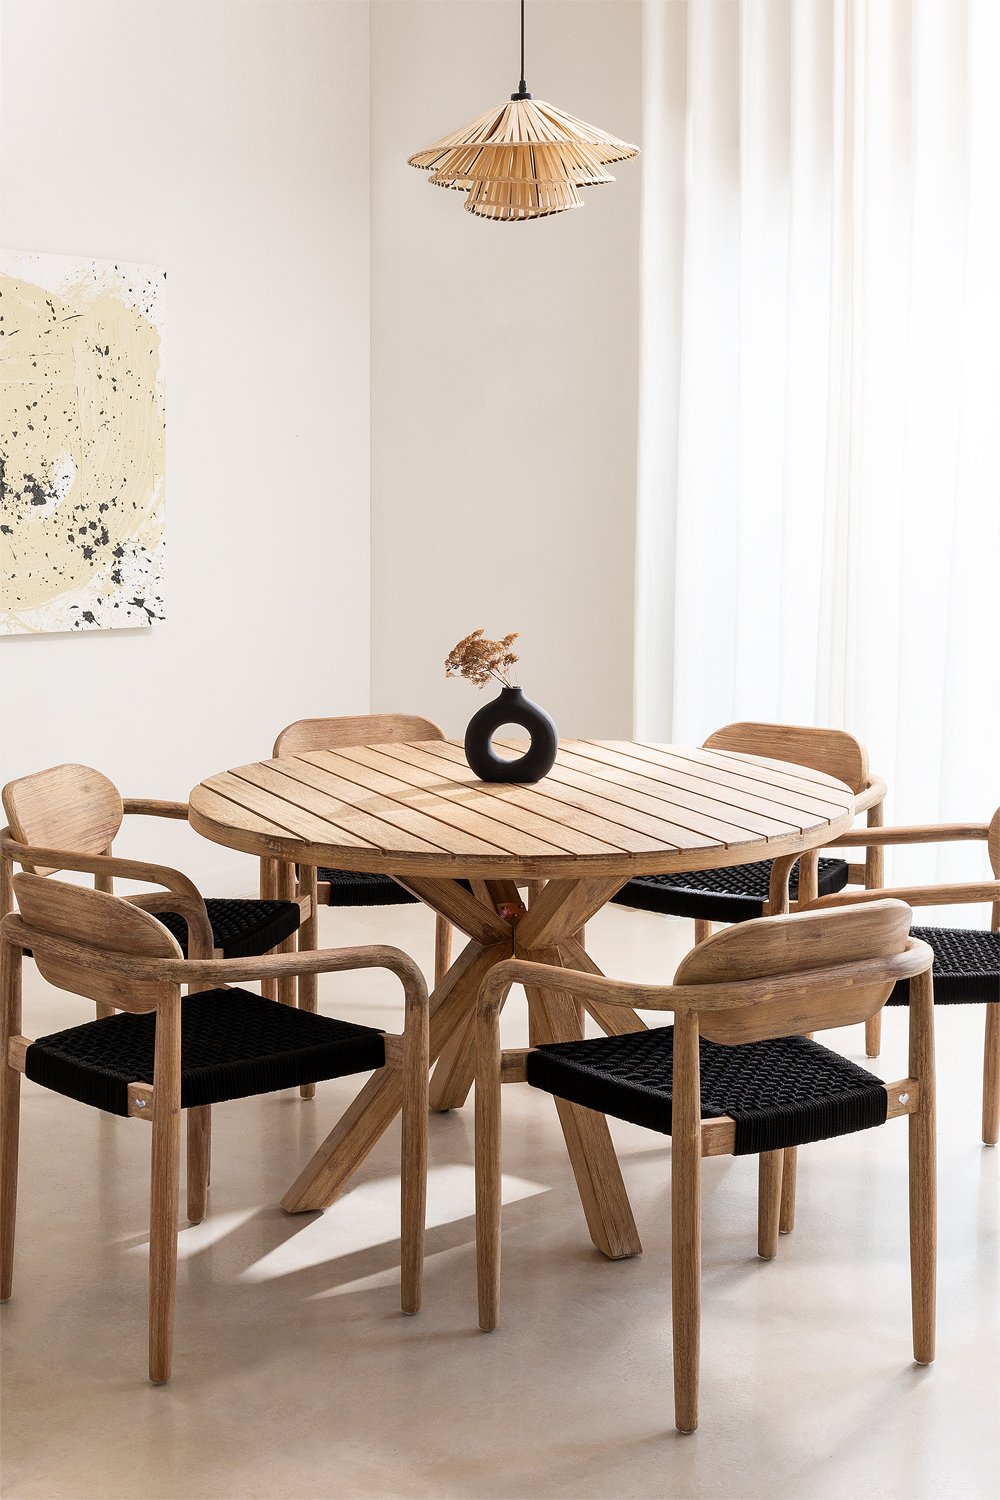 Set mit rundem Tisch (Ø 120 cm) und 6 Esszimmerstühle mit Armlehnen aus Holz Naele, Galeriebild 1